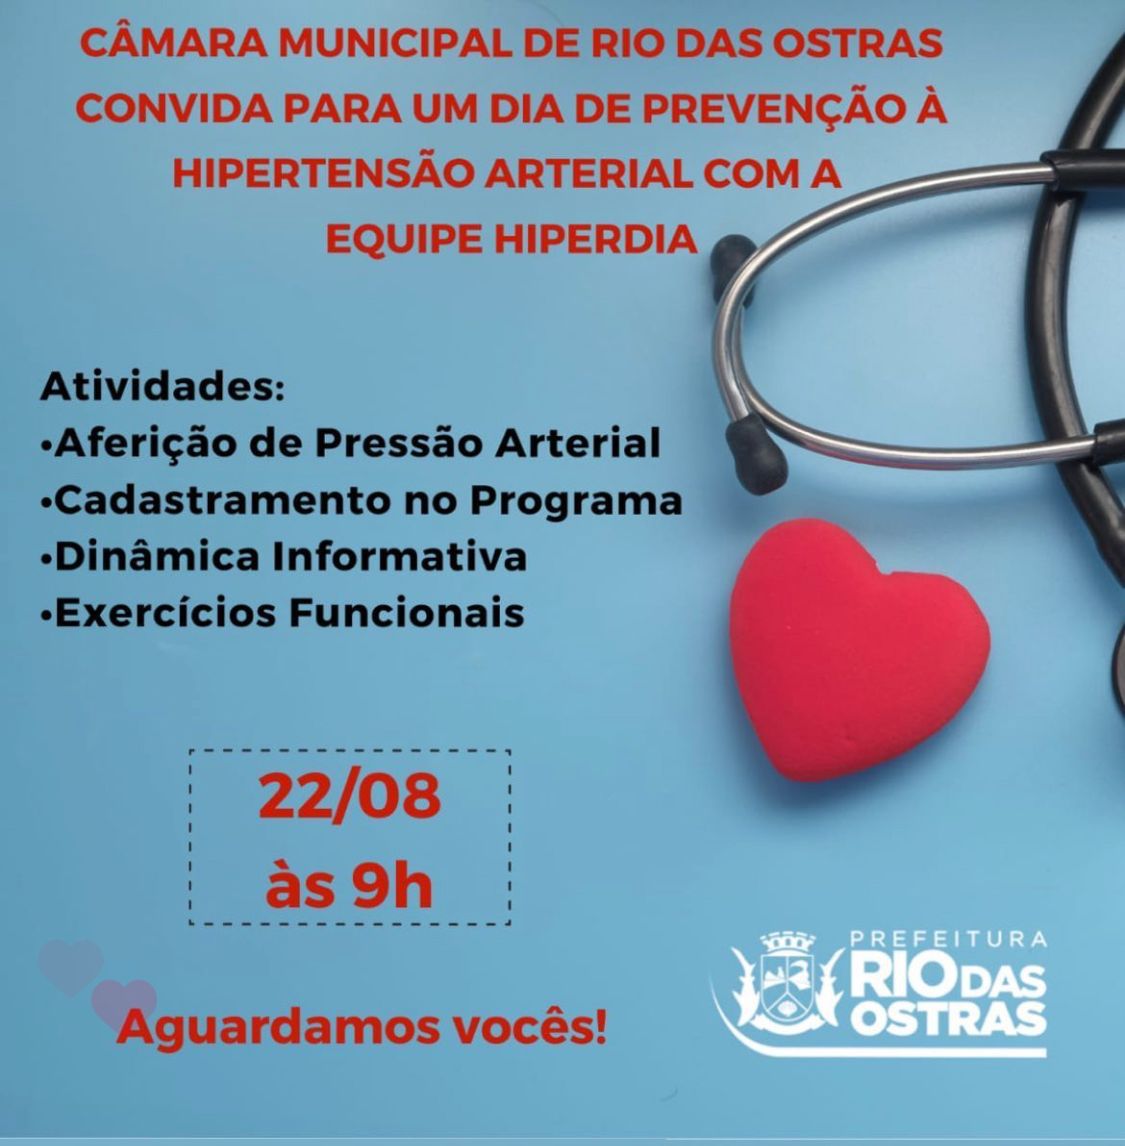 Dia de Prevenção à Hipertensão Arterial com a Equipe Hiperdia